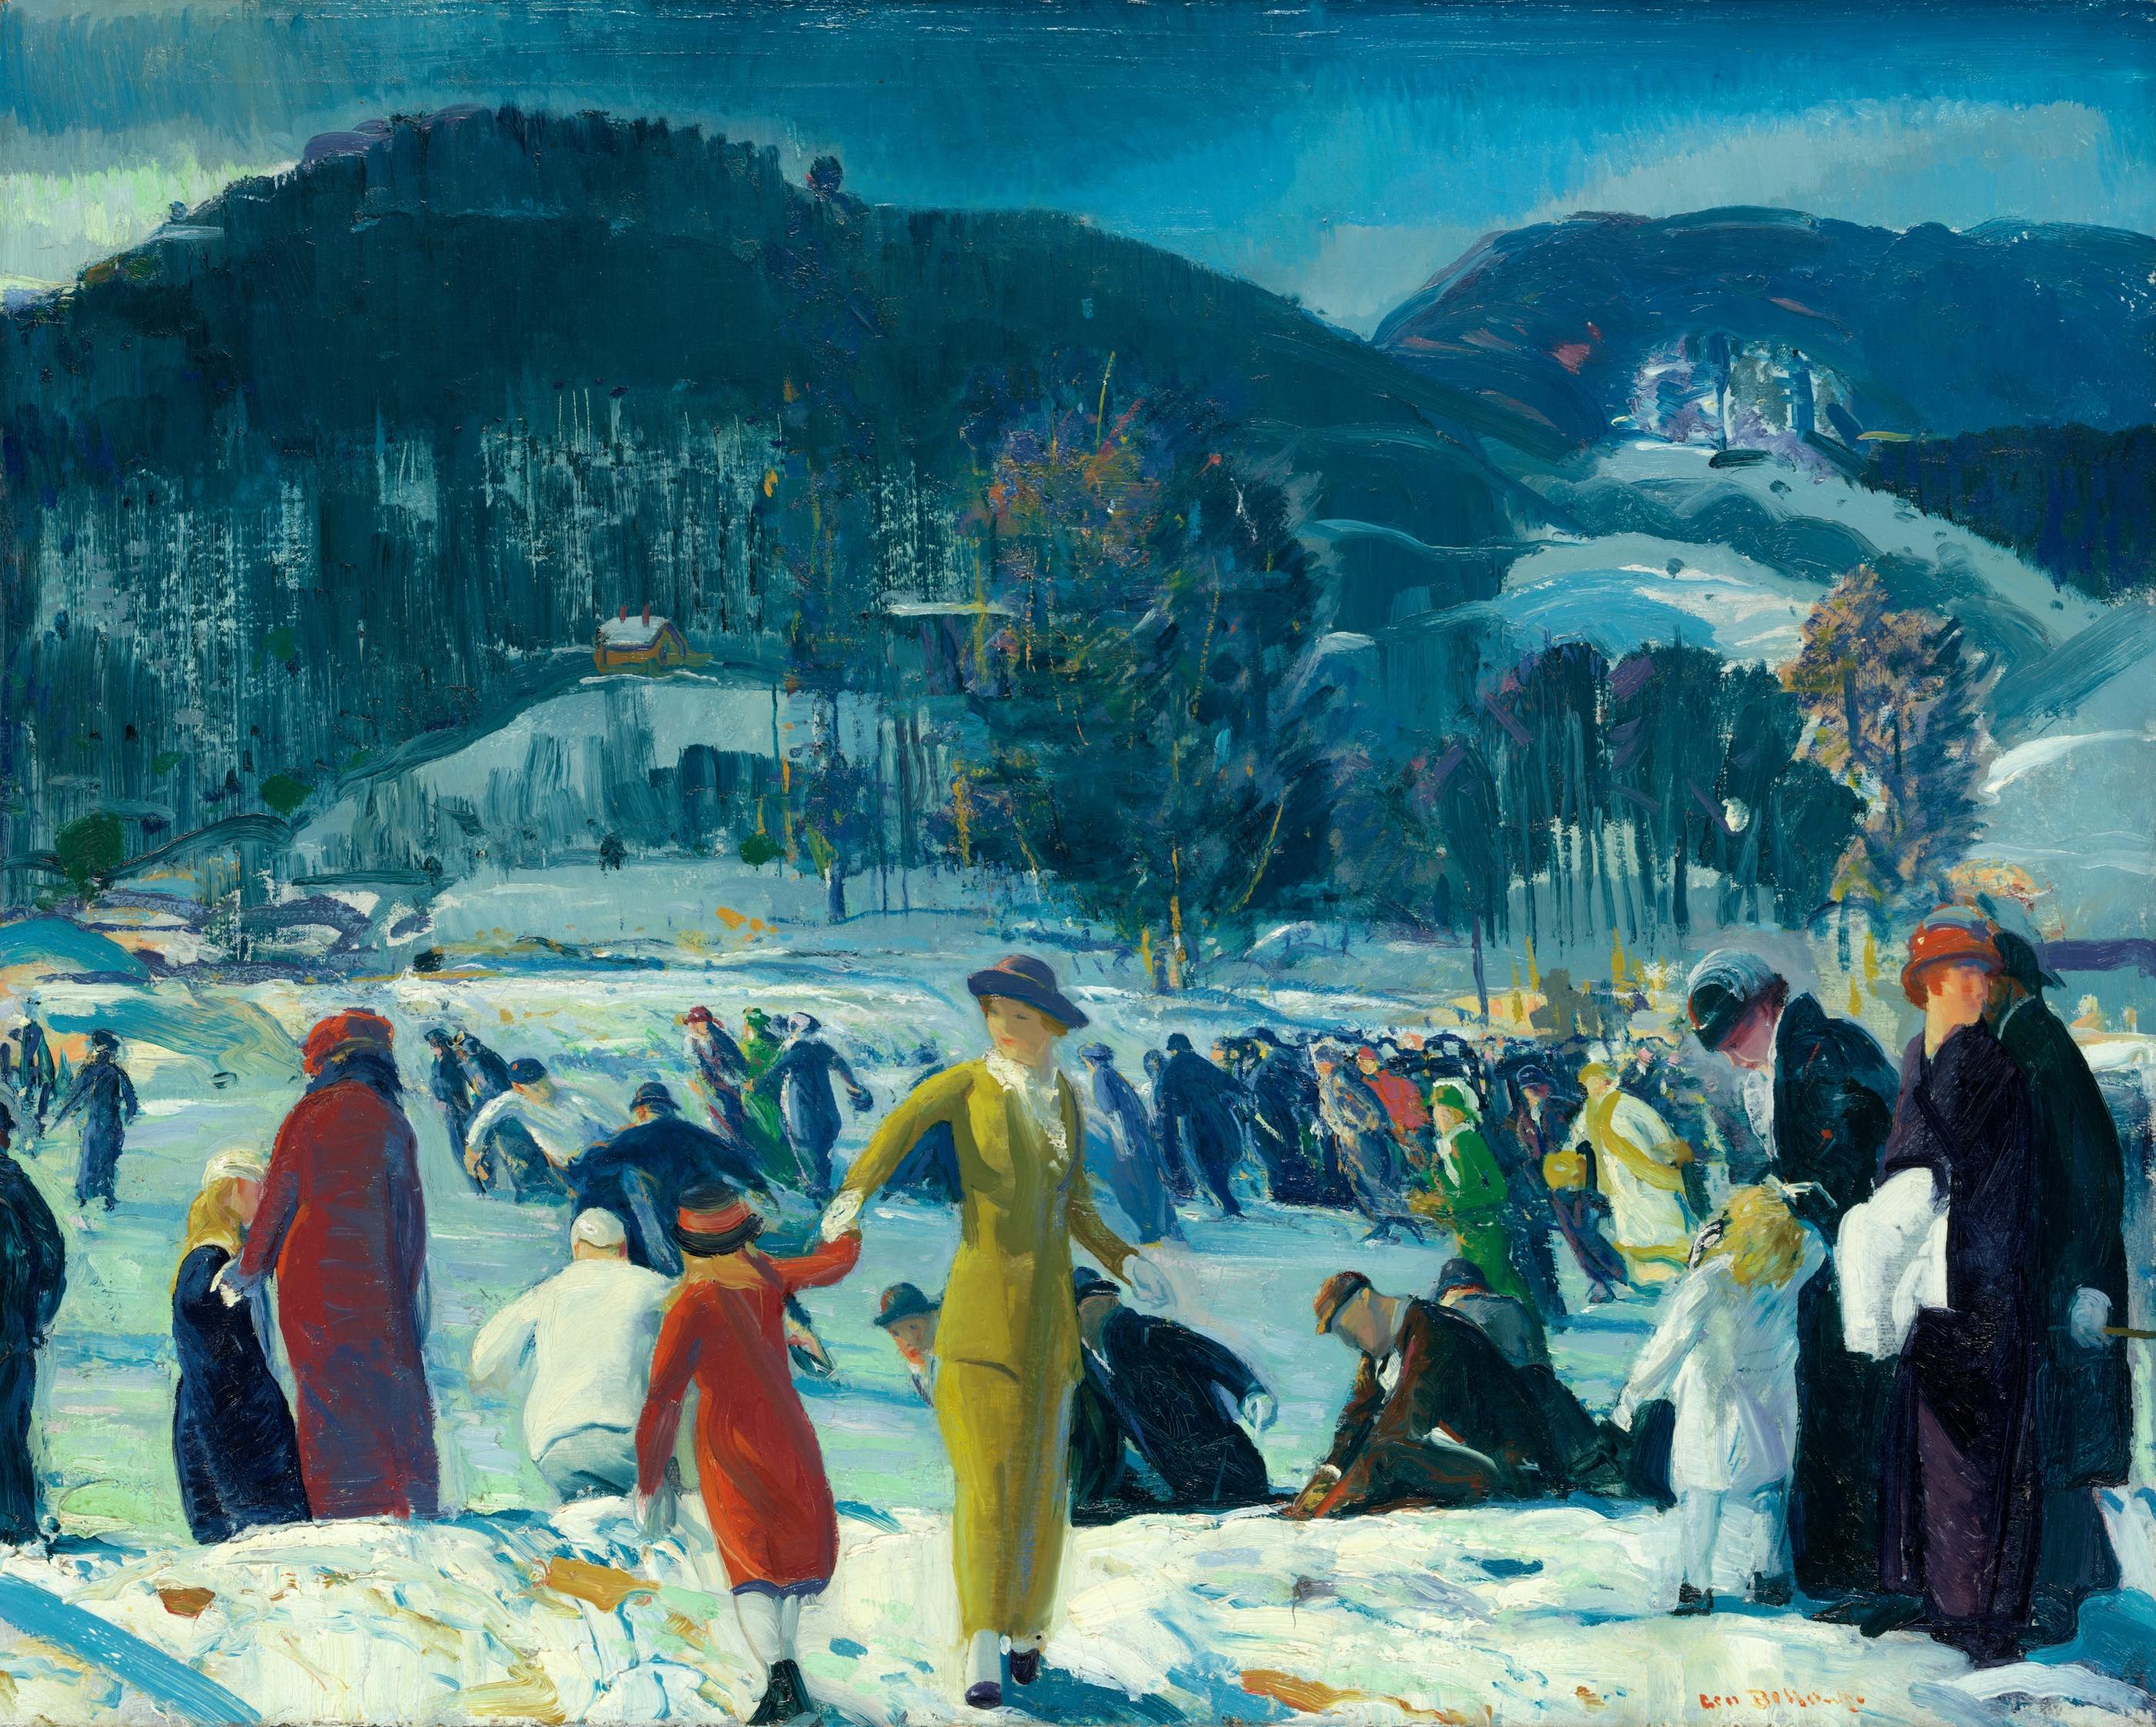 حب الشتاء by George Bellows - 1914 - الأبعاد: 101.6 × 81.6 سم 